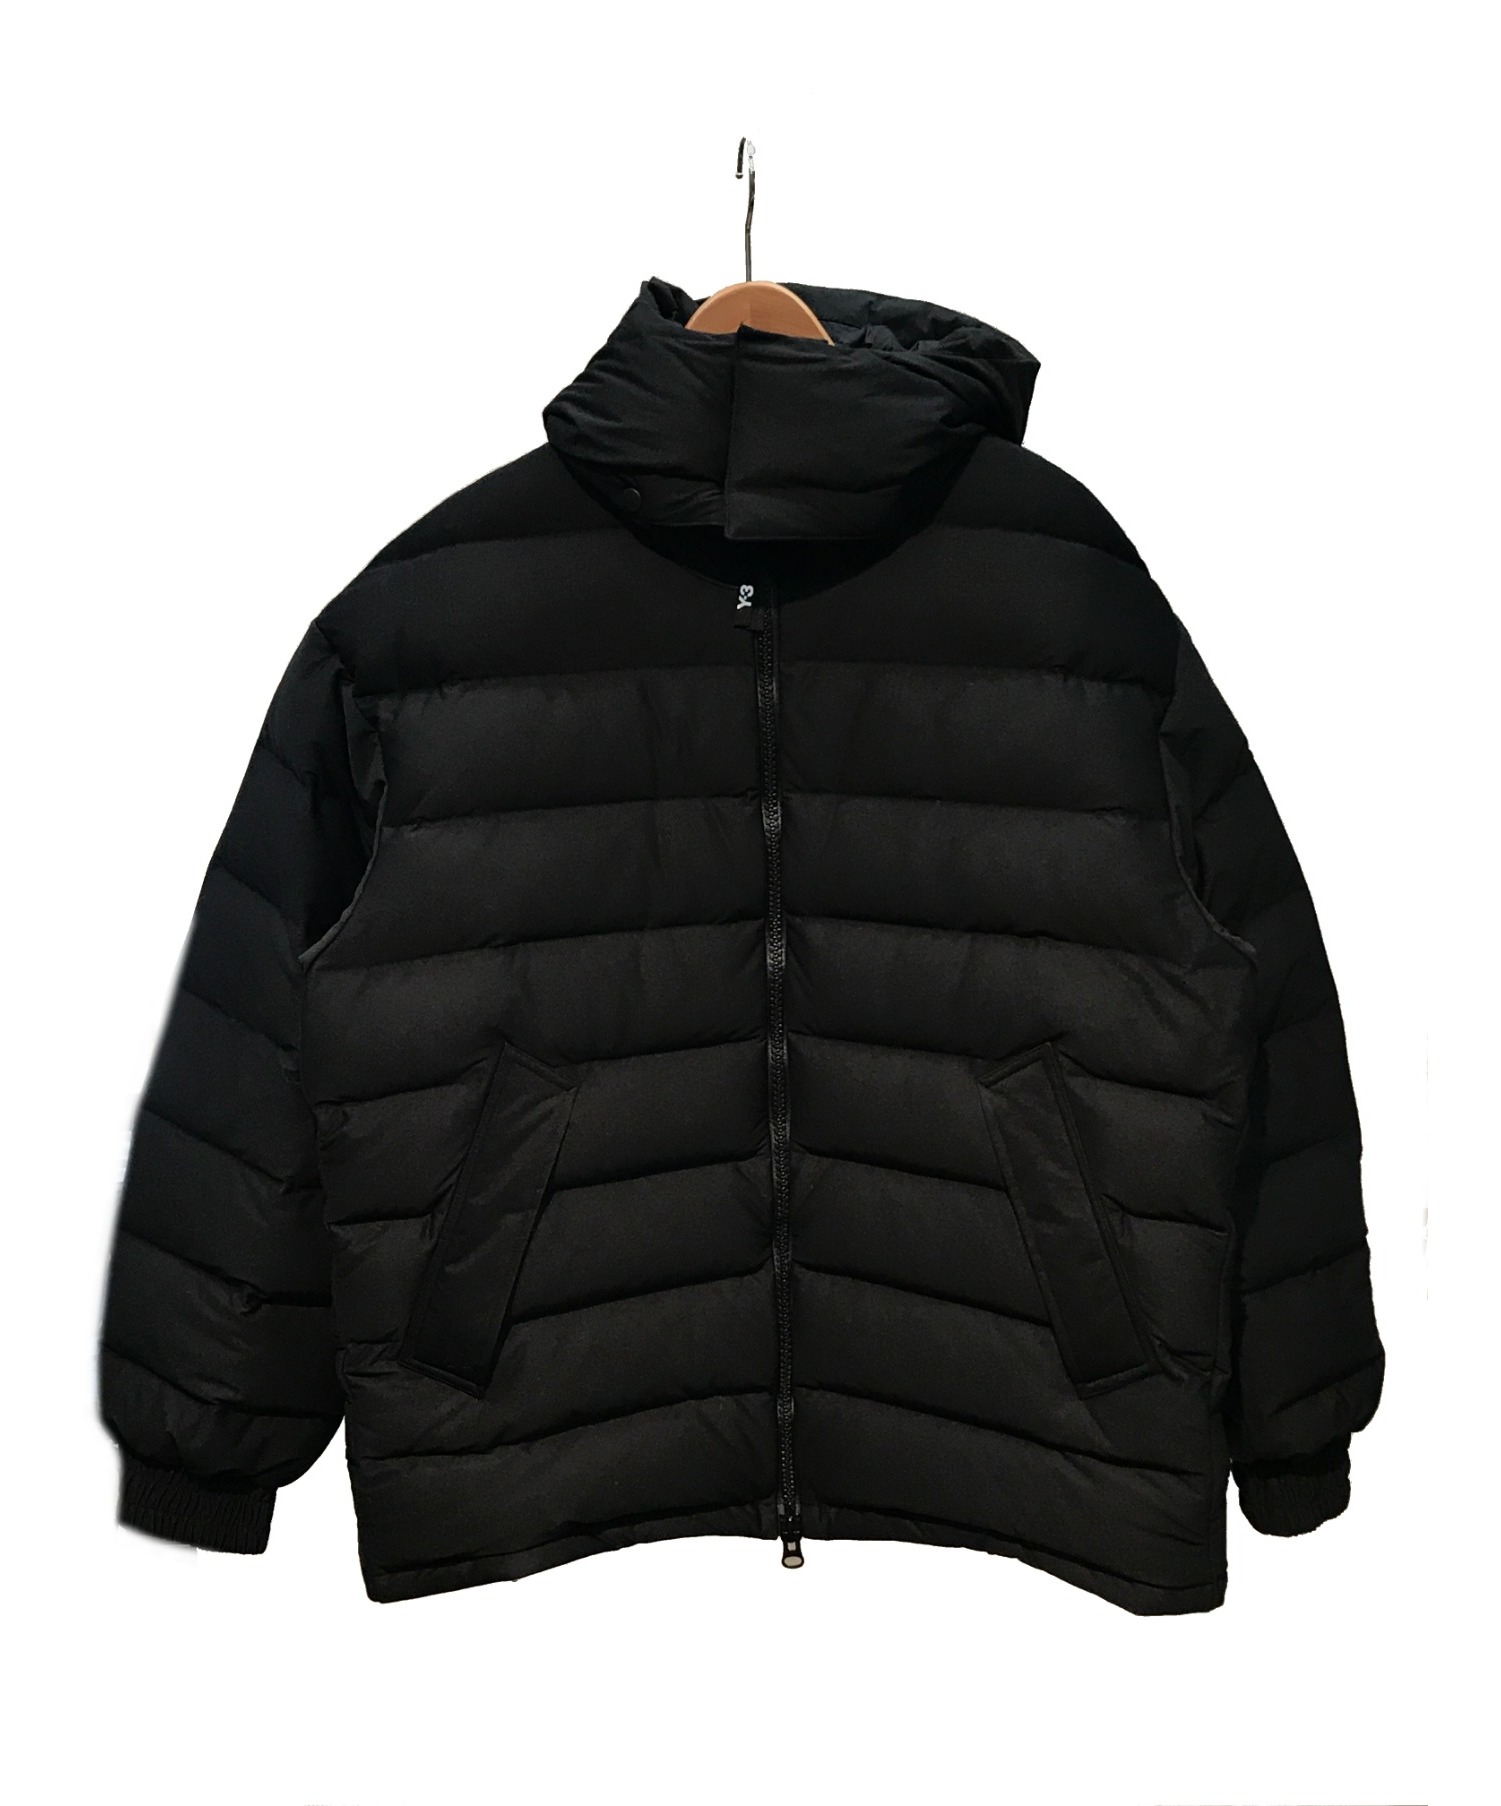 Y-3 (ワイスリー) ダウンジャケット ブラック サイズ:L 秋冬物